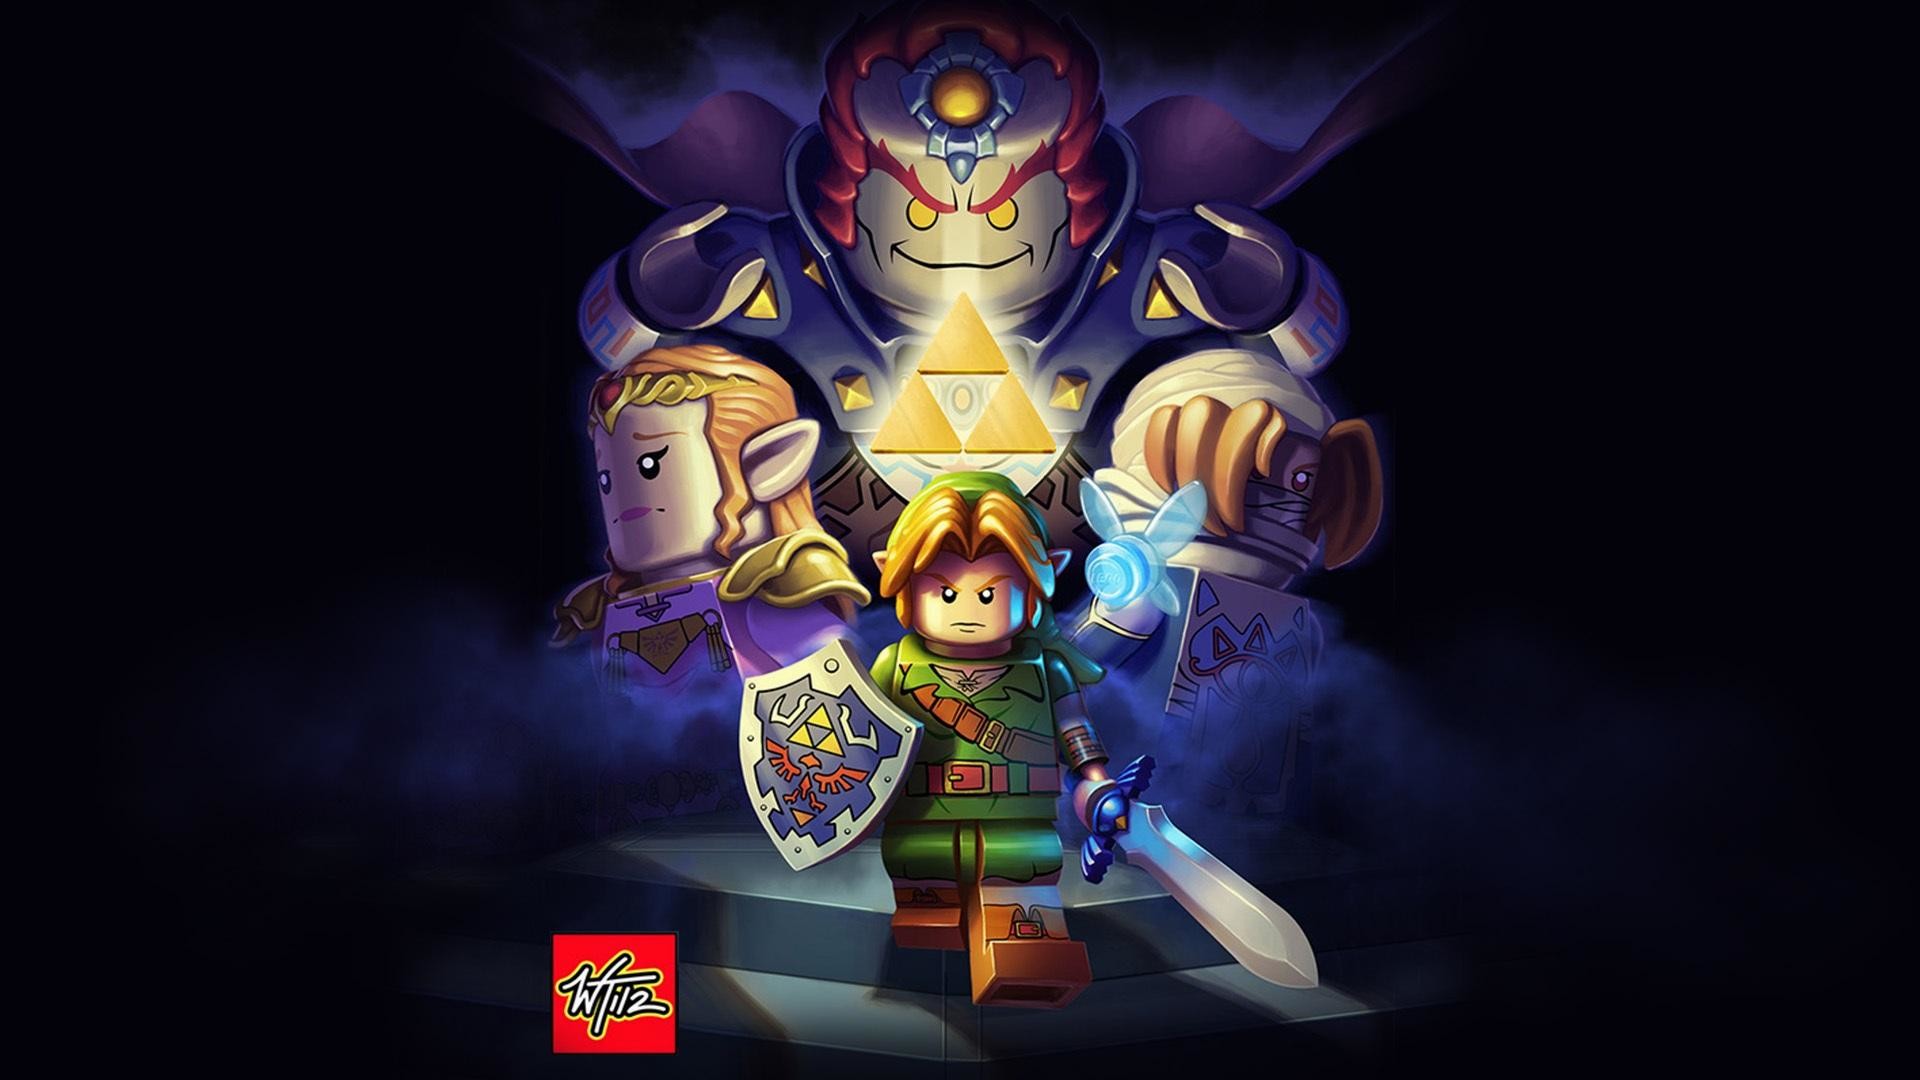 Epic Legend of Zelda Wallpaper (70+ images)